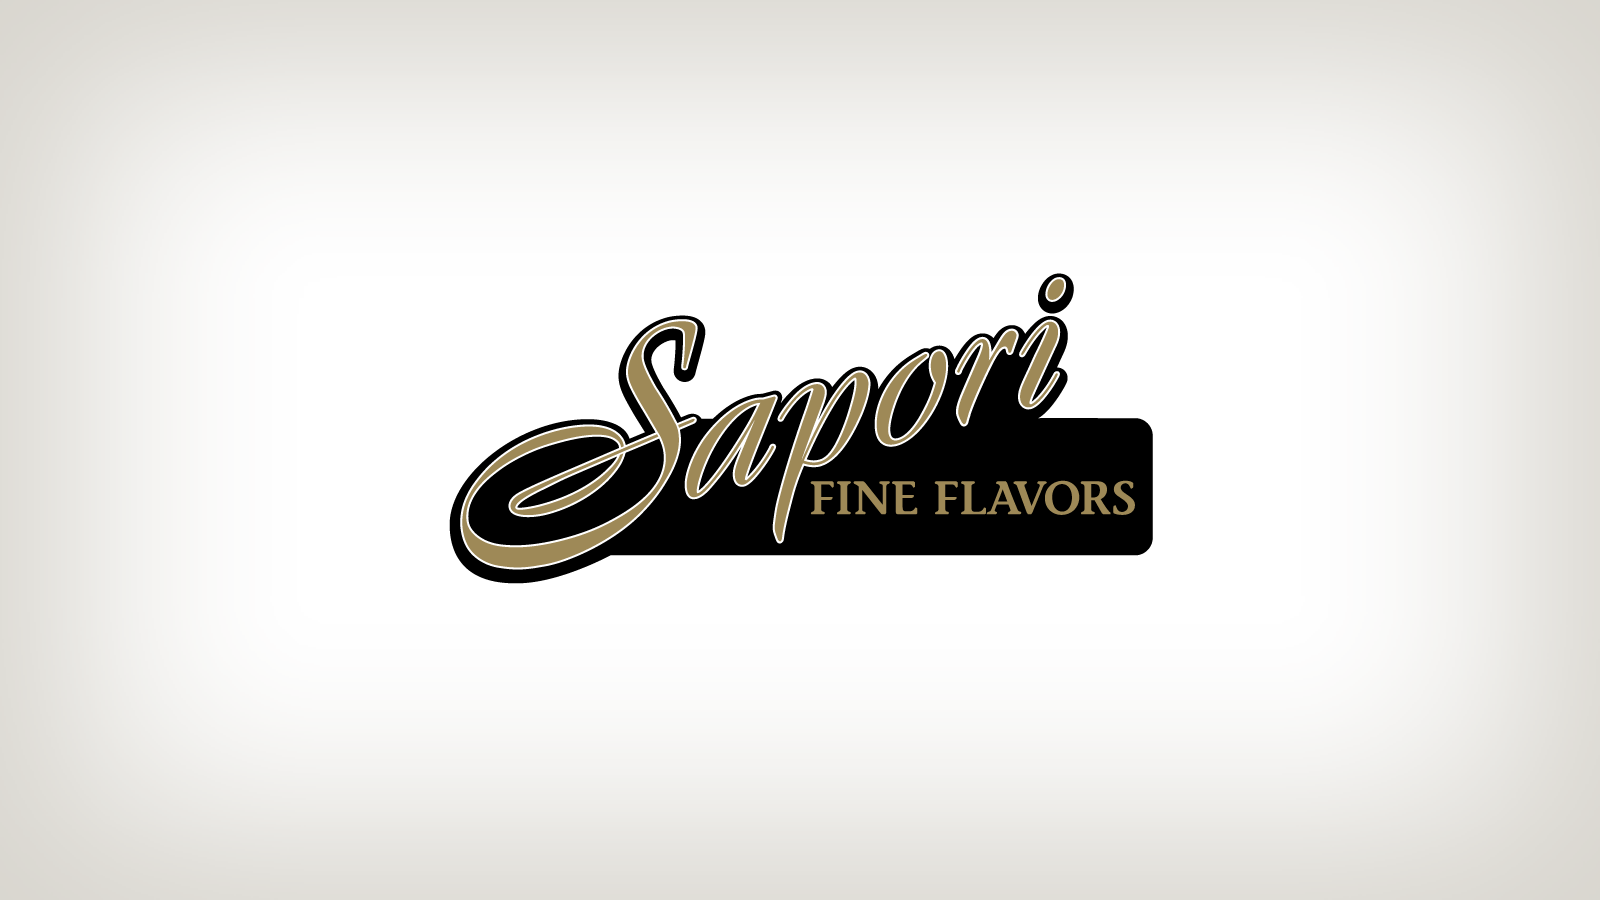 Logo Design for Sapori Fine Flavors